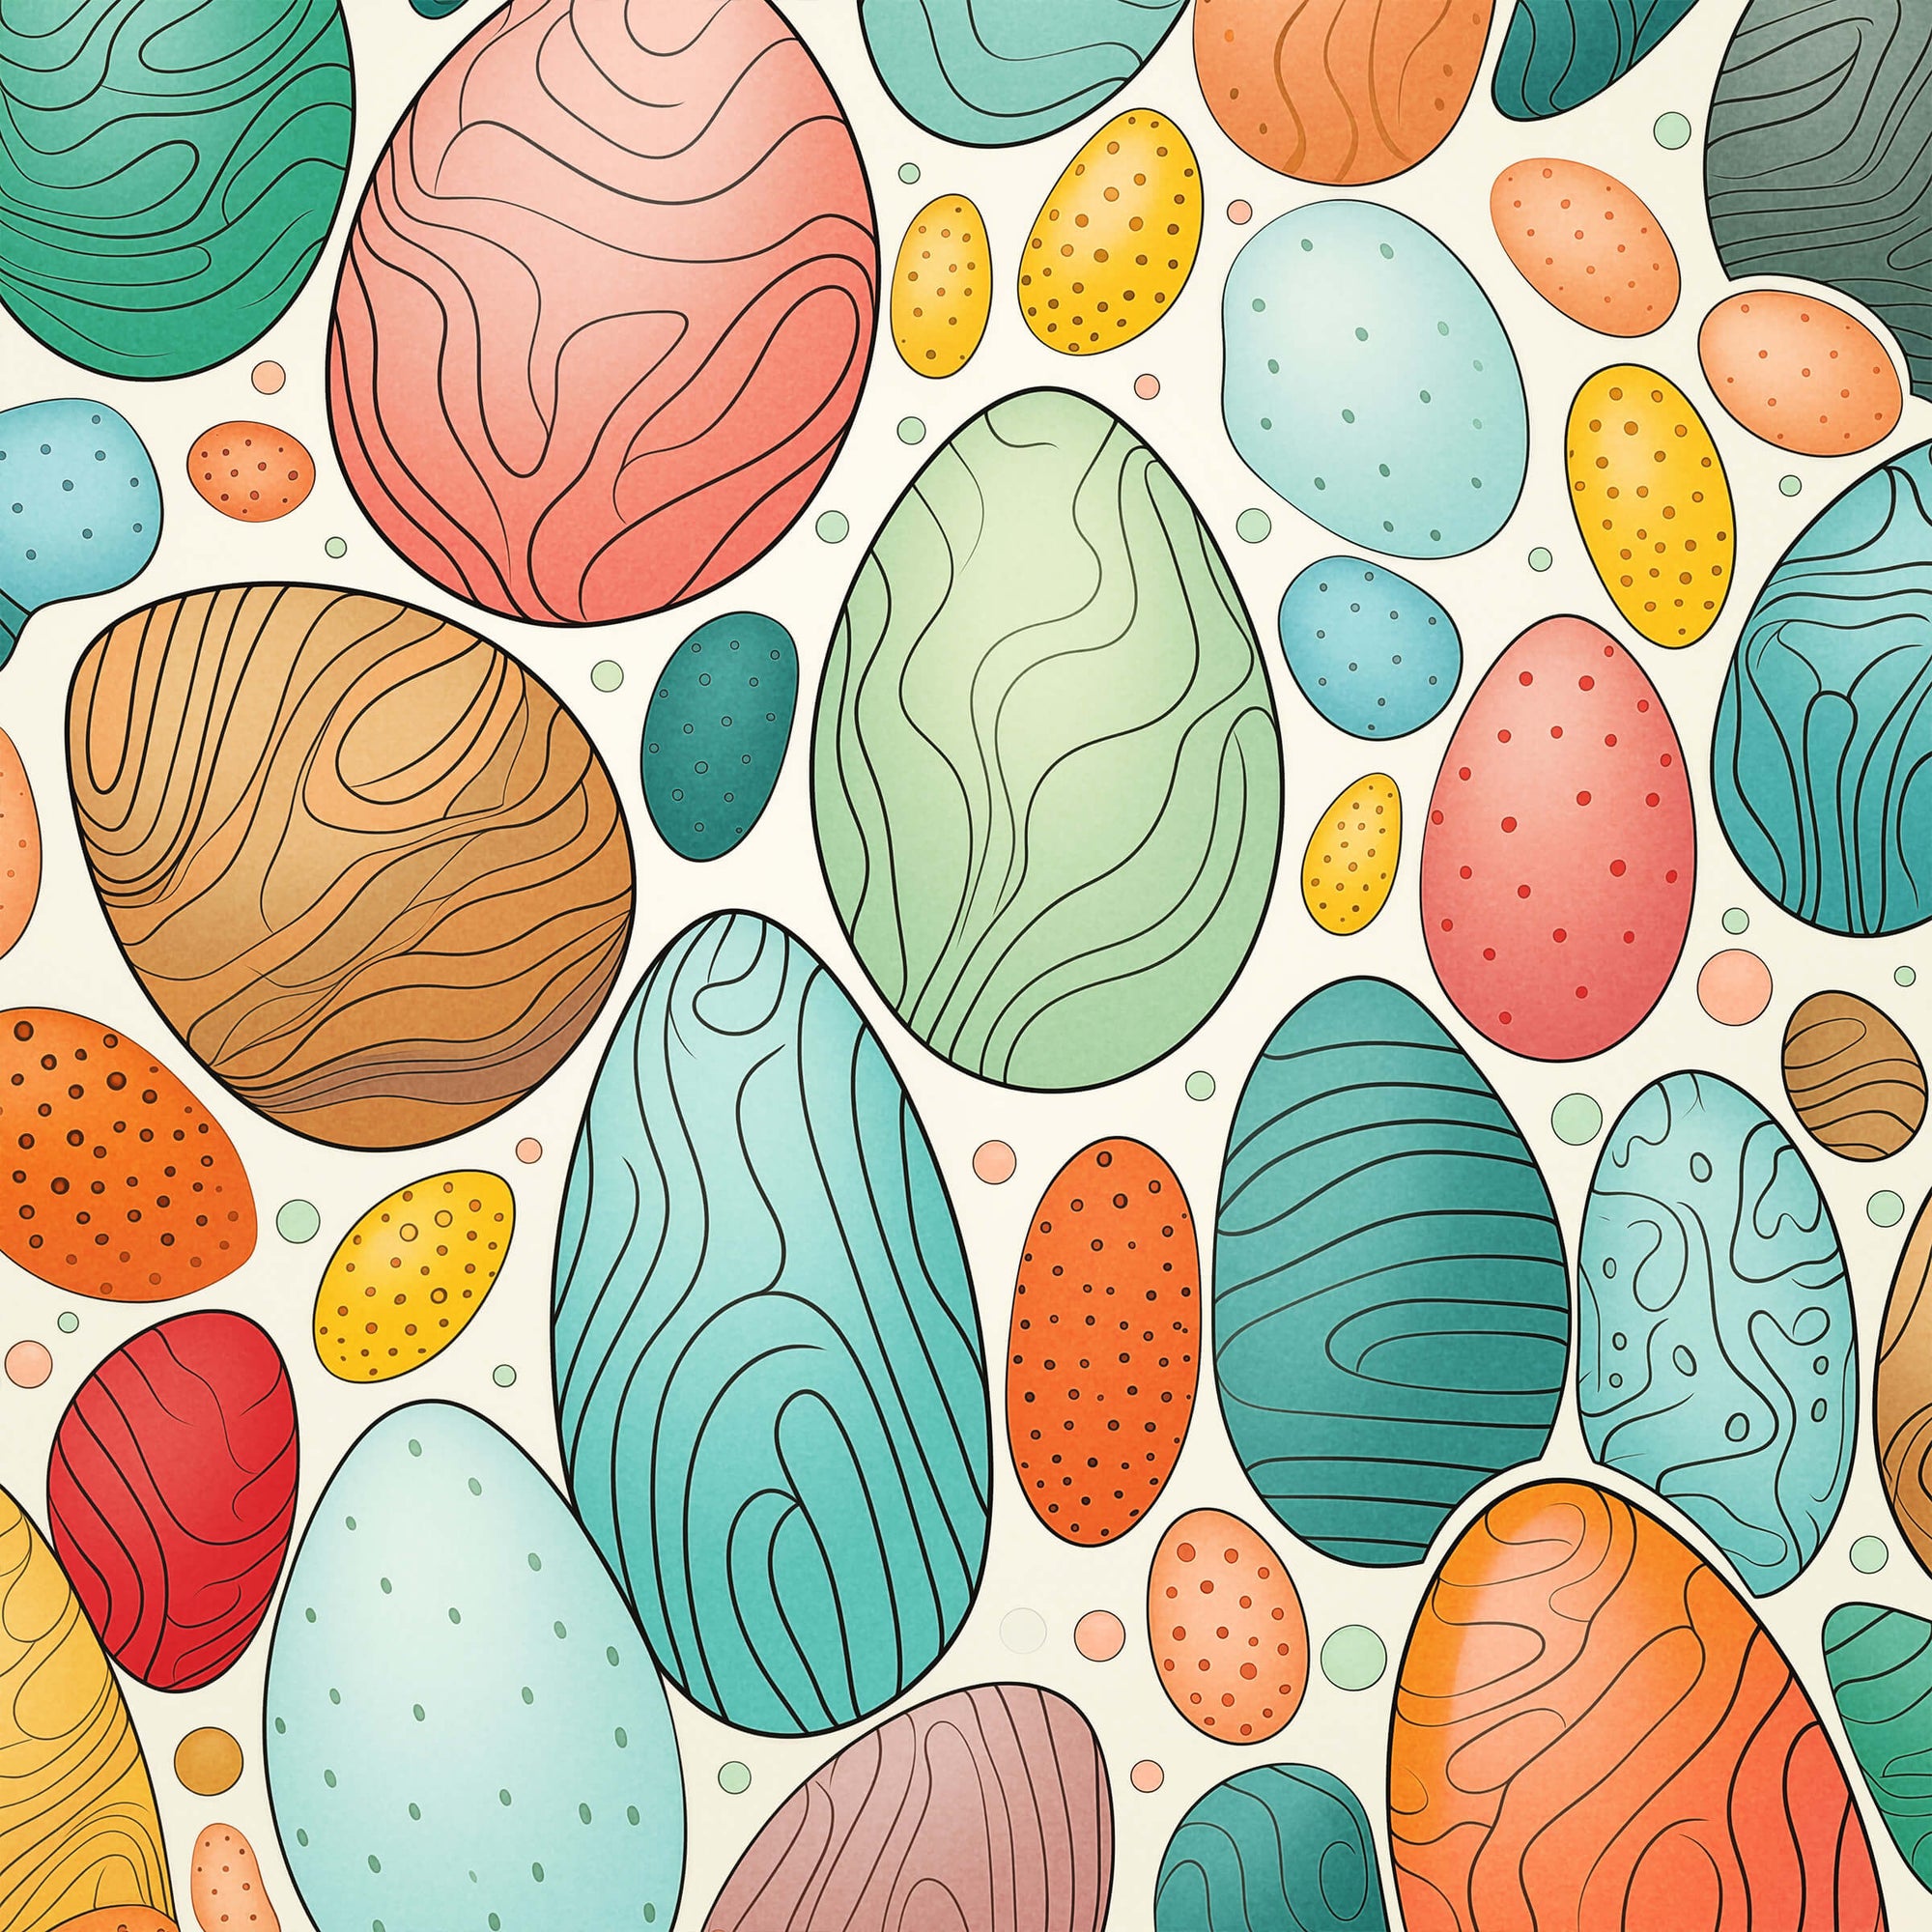 A Dozen Fun Facts About Eggs